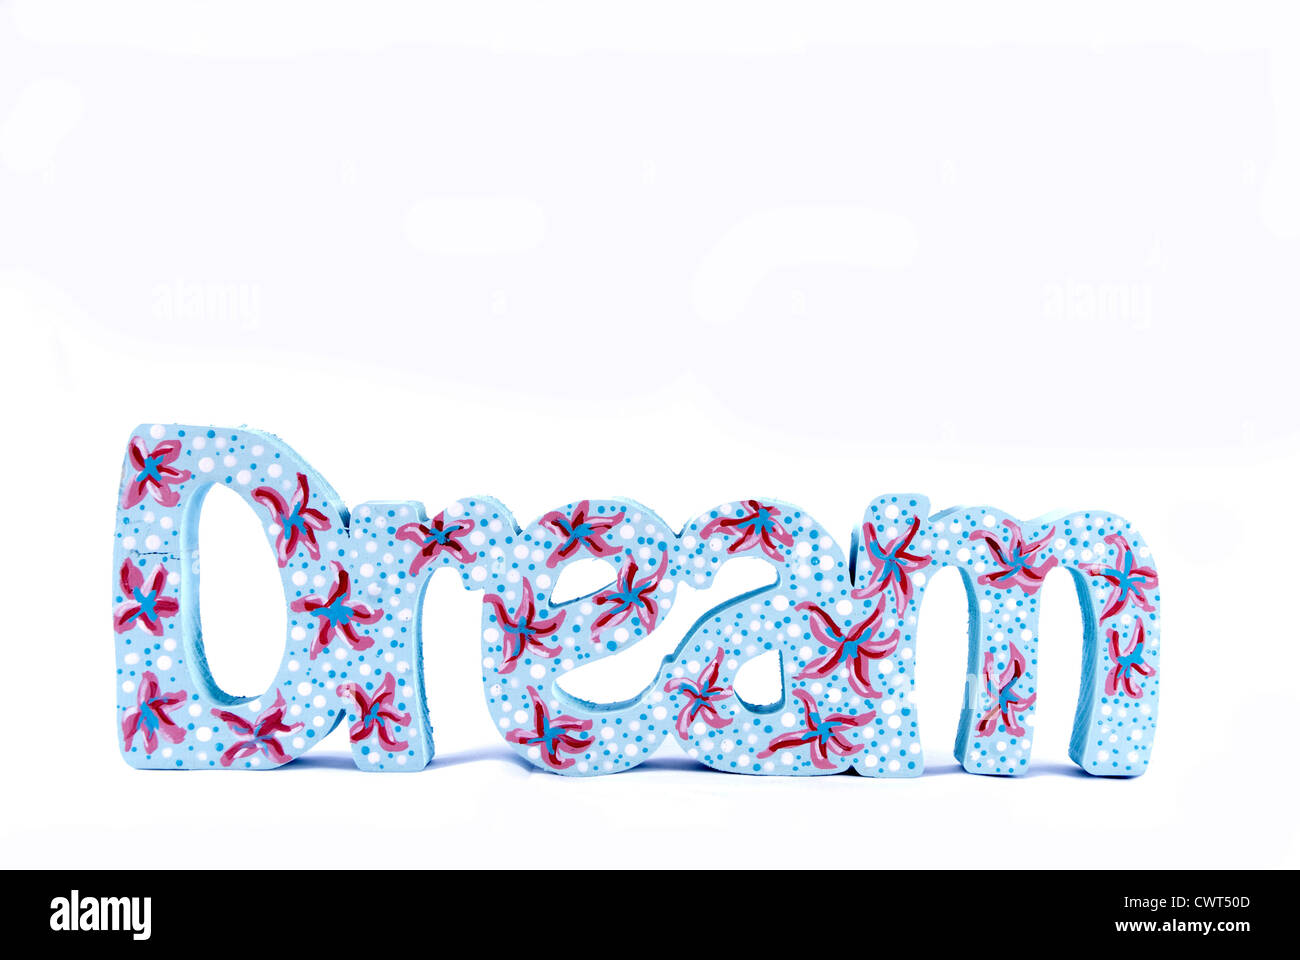 Das Wort "Dream" aus Holz geschnitten und dekoriert Stockfoto